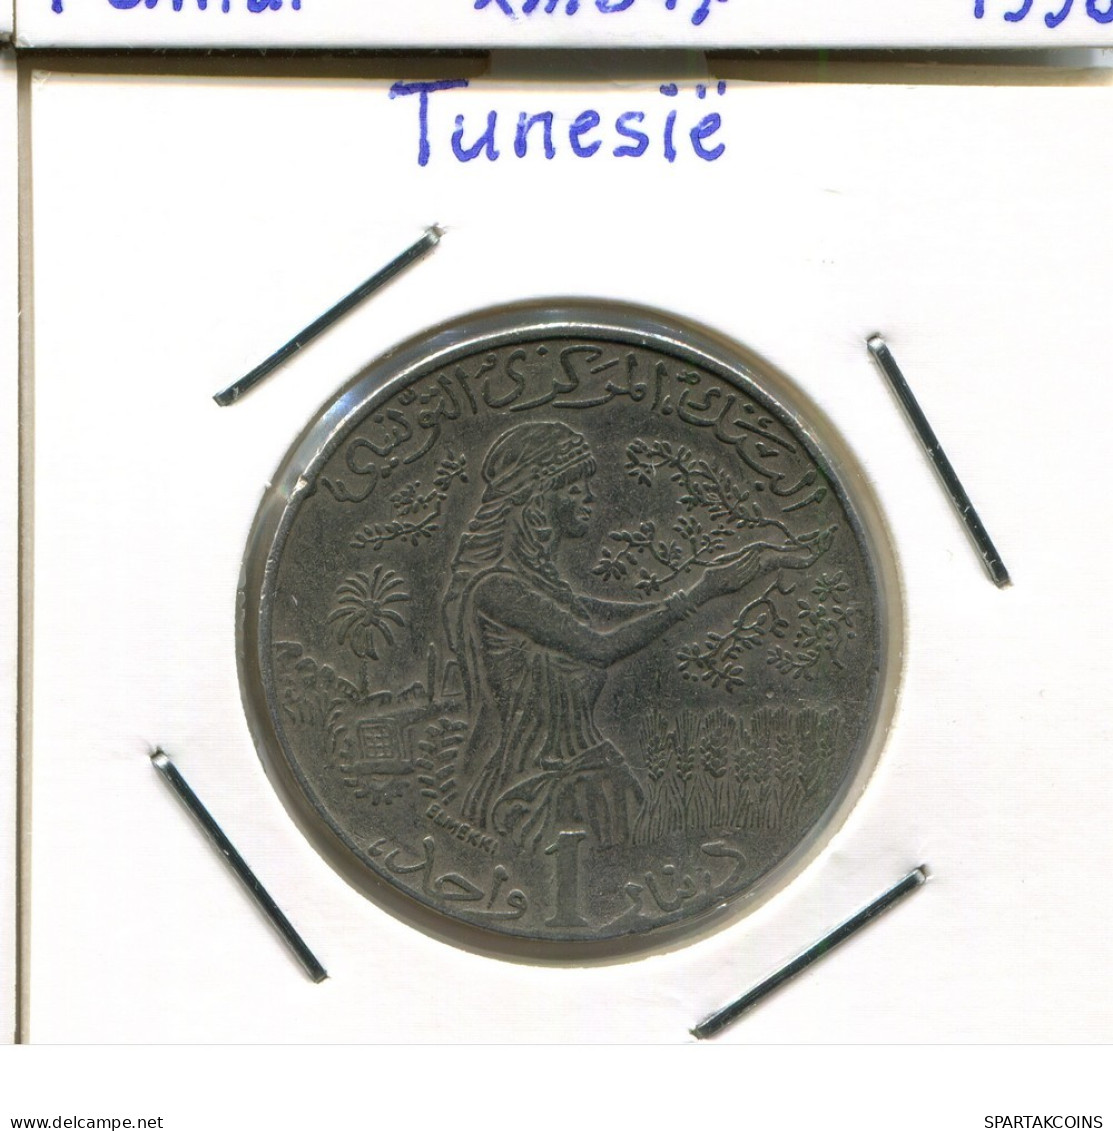 1 DINAR 1997 TÚNEZ TUNISIA Moneda #AP847.2.E.A - Tunesië